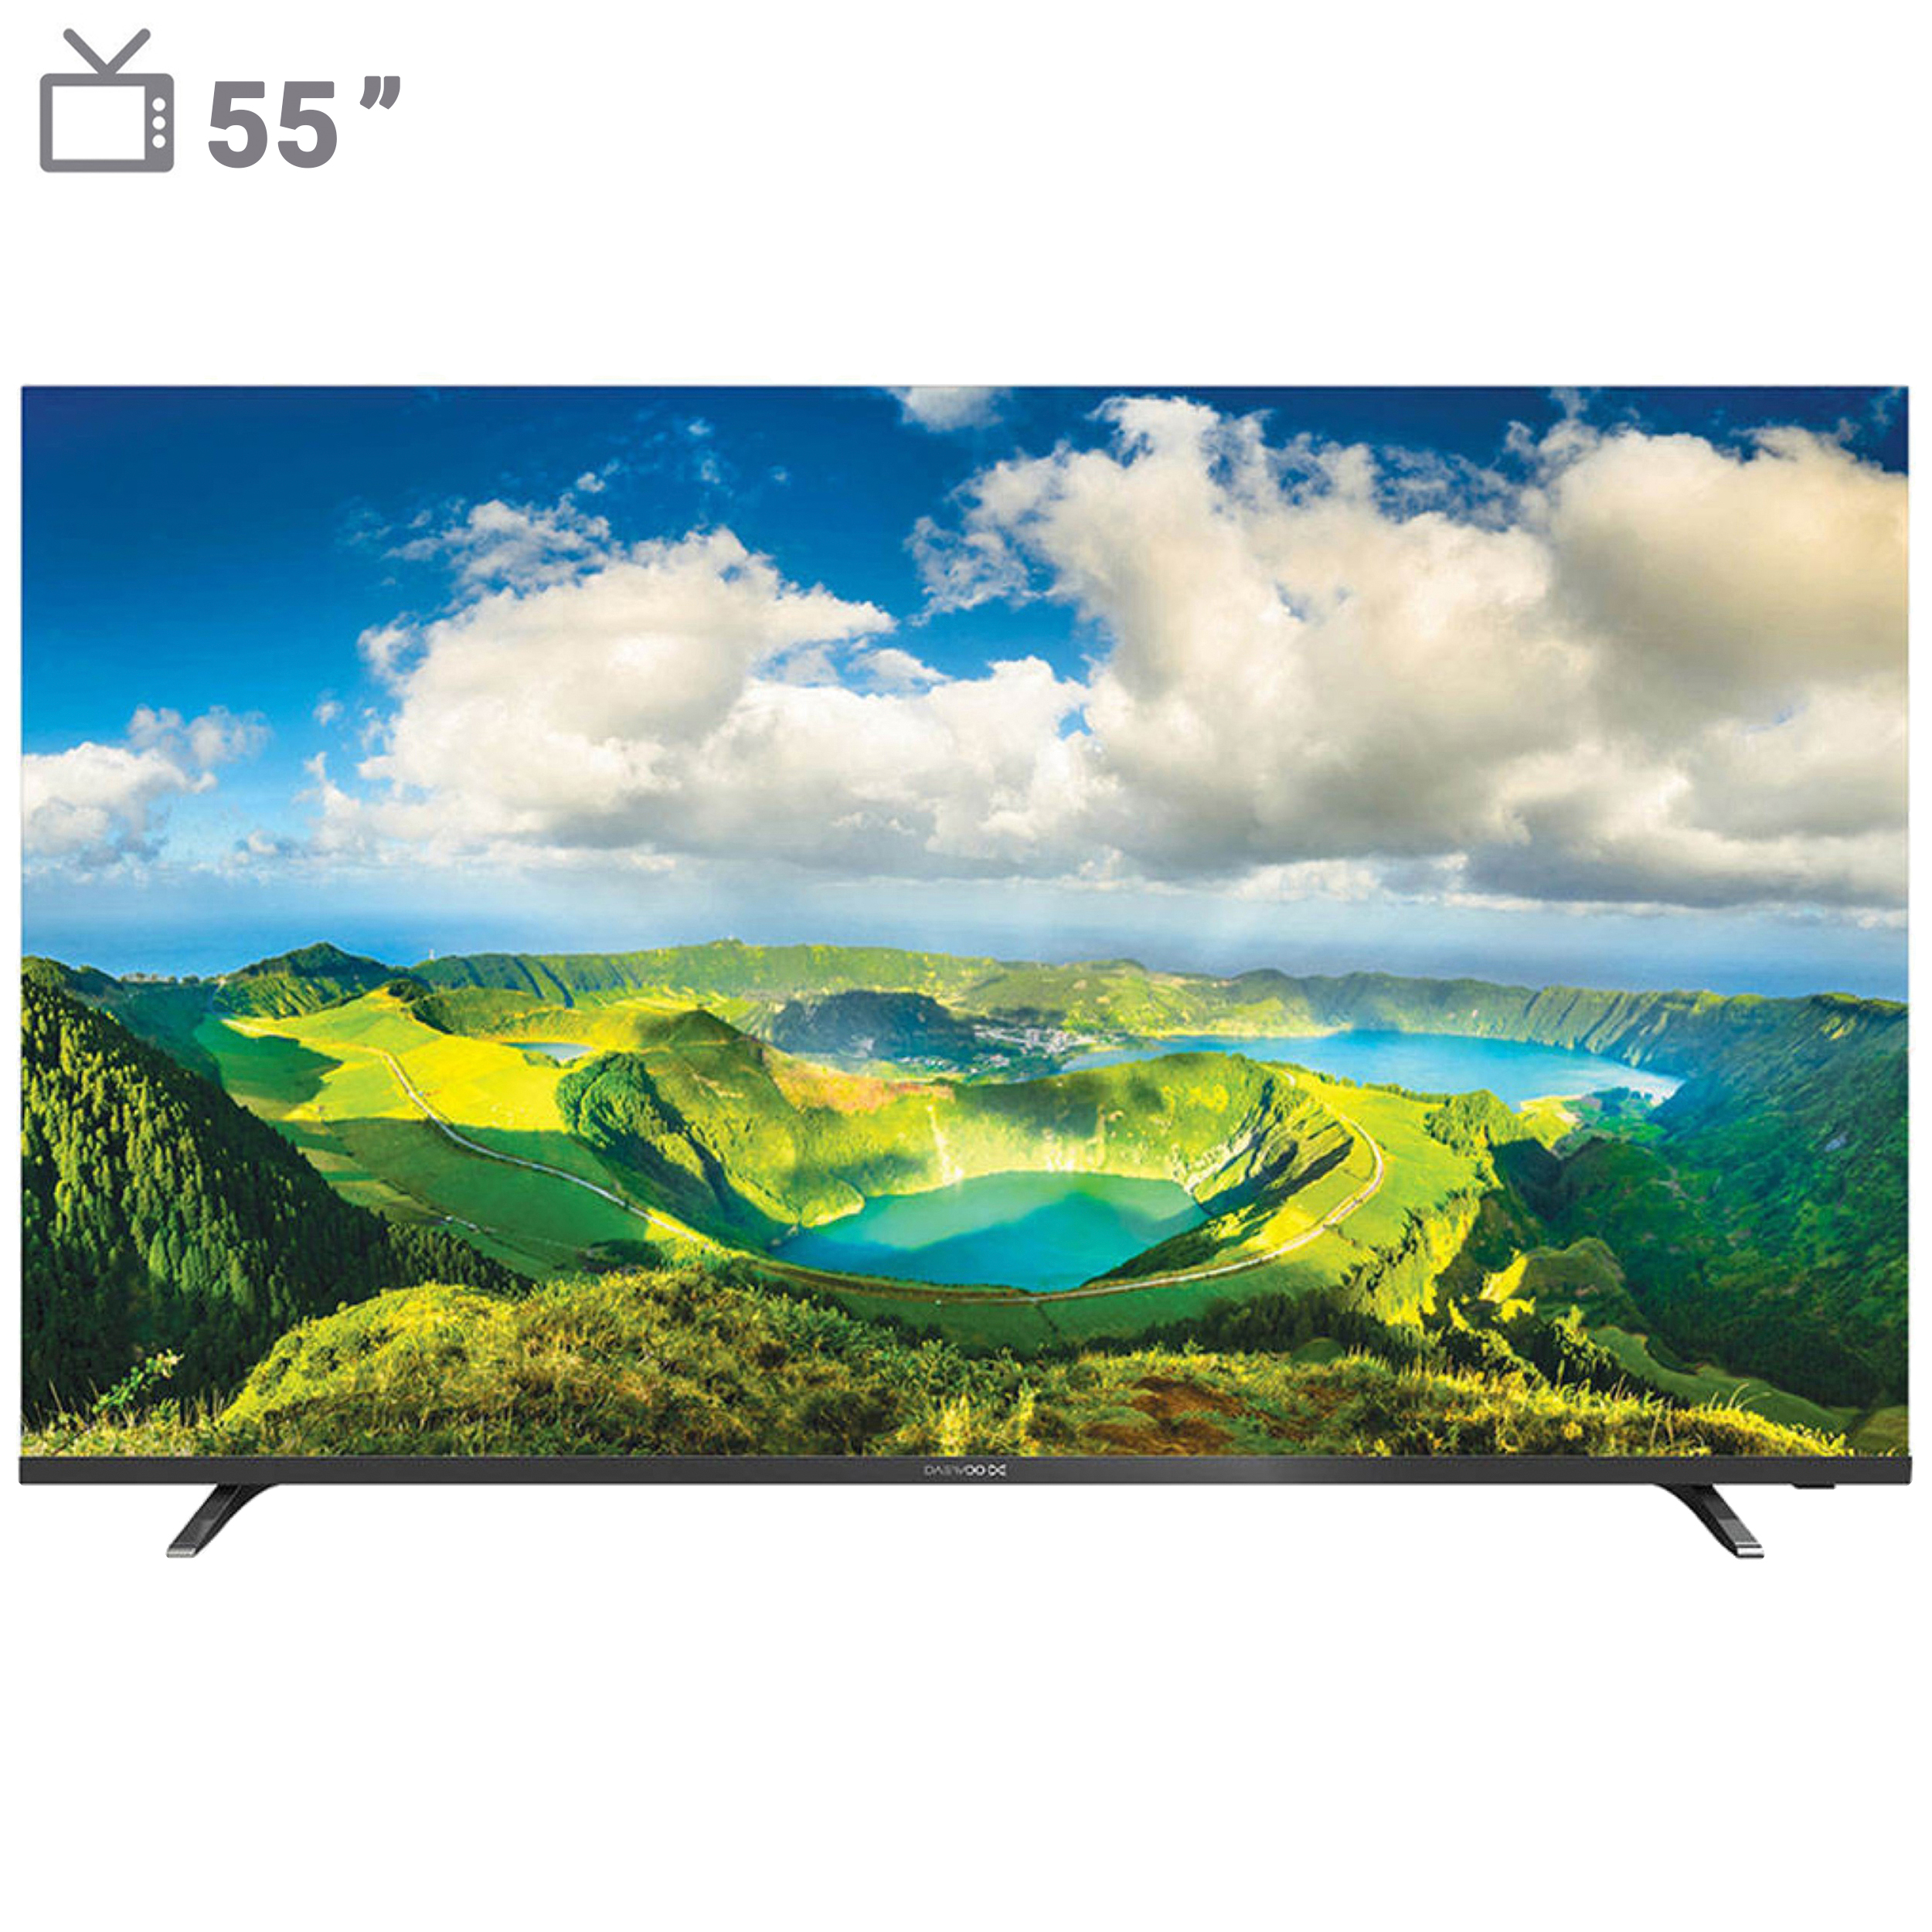 نکته خرید - قیمت روز تلویزیون ال ای دی هوشمند دوو مدل DSL-55SU1700 سایز 55 اینچ خرید